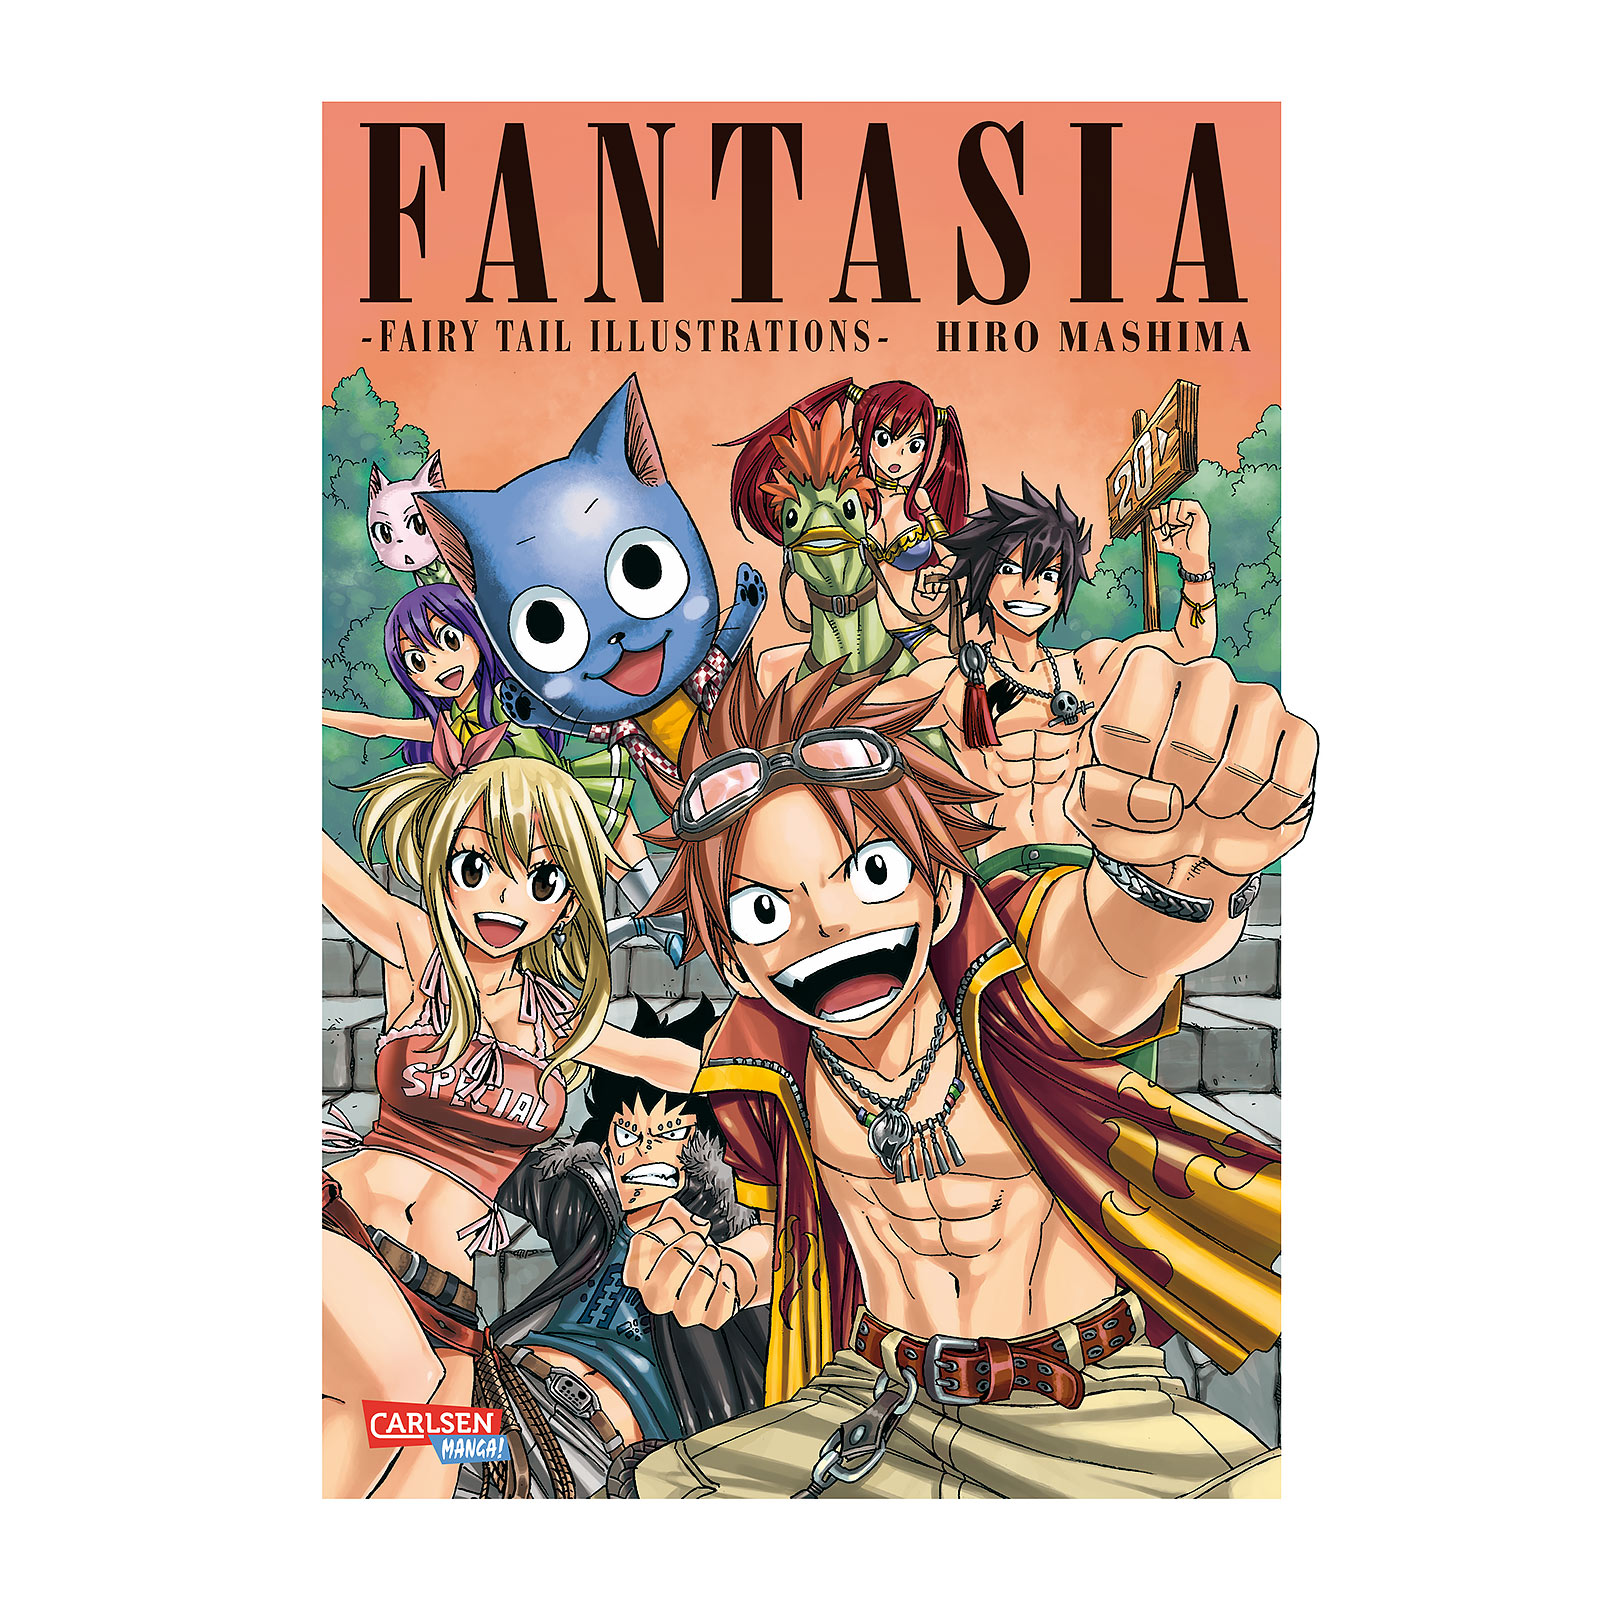 Fairy Tail - Fantasia